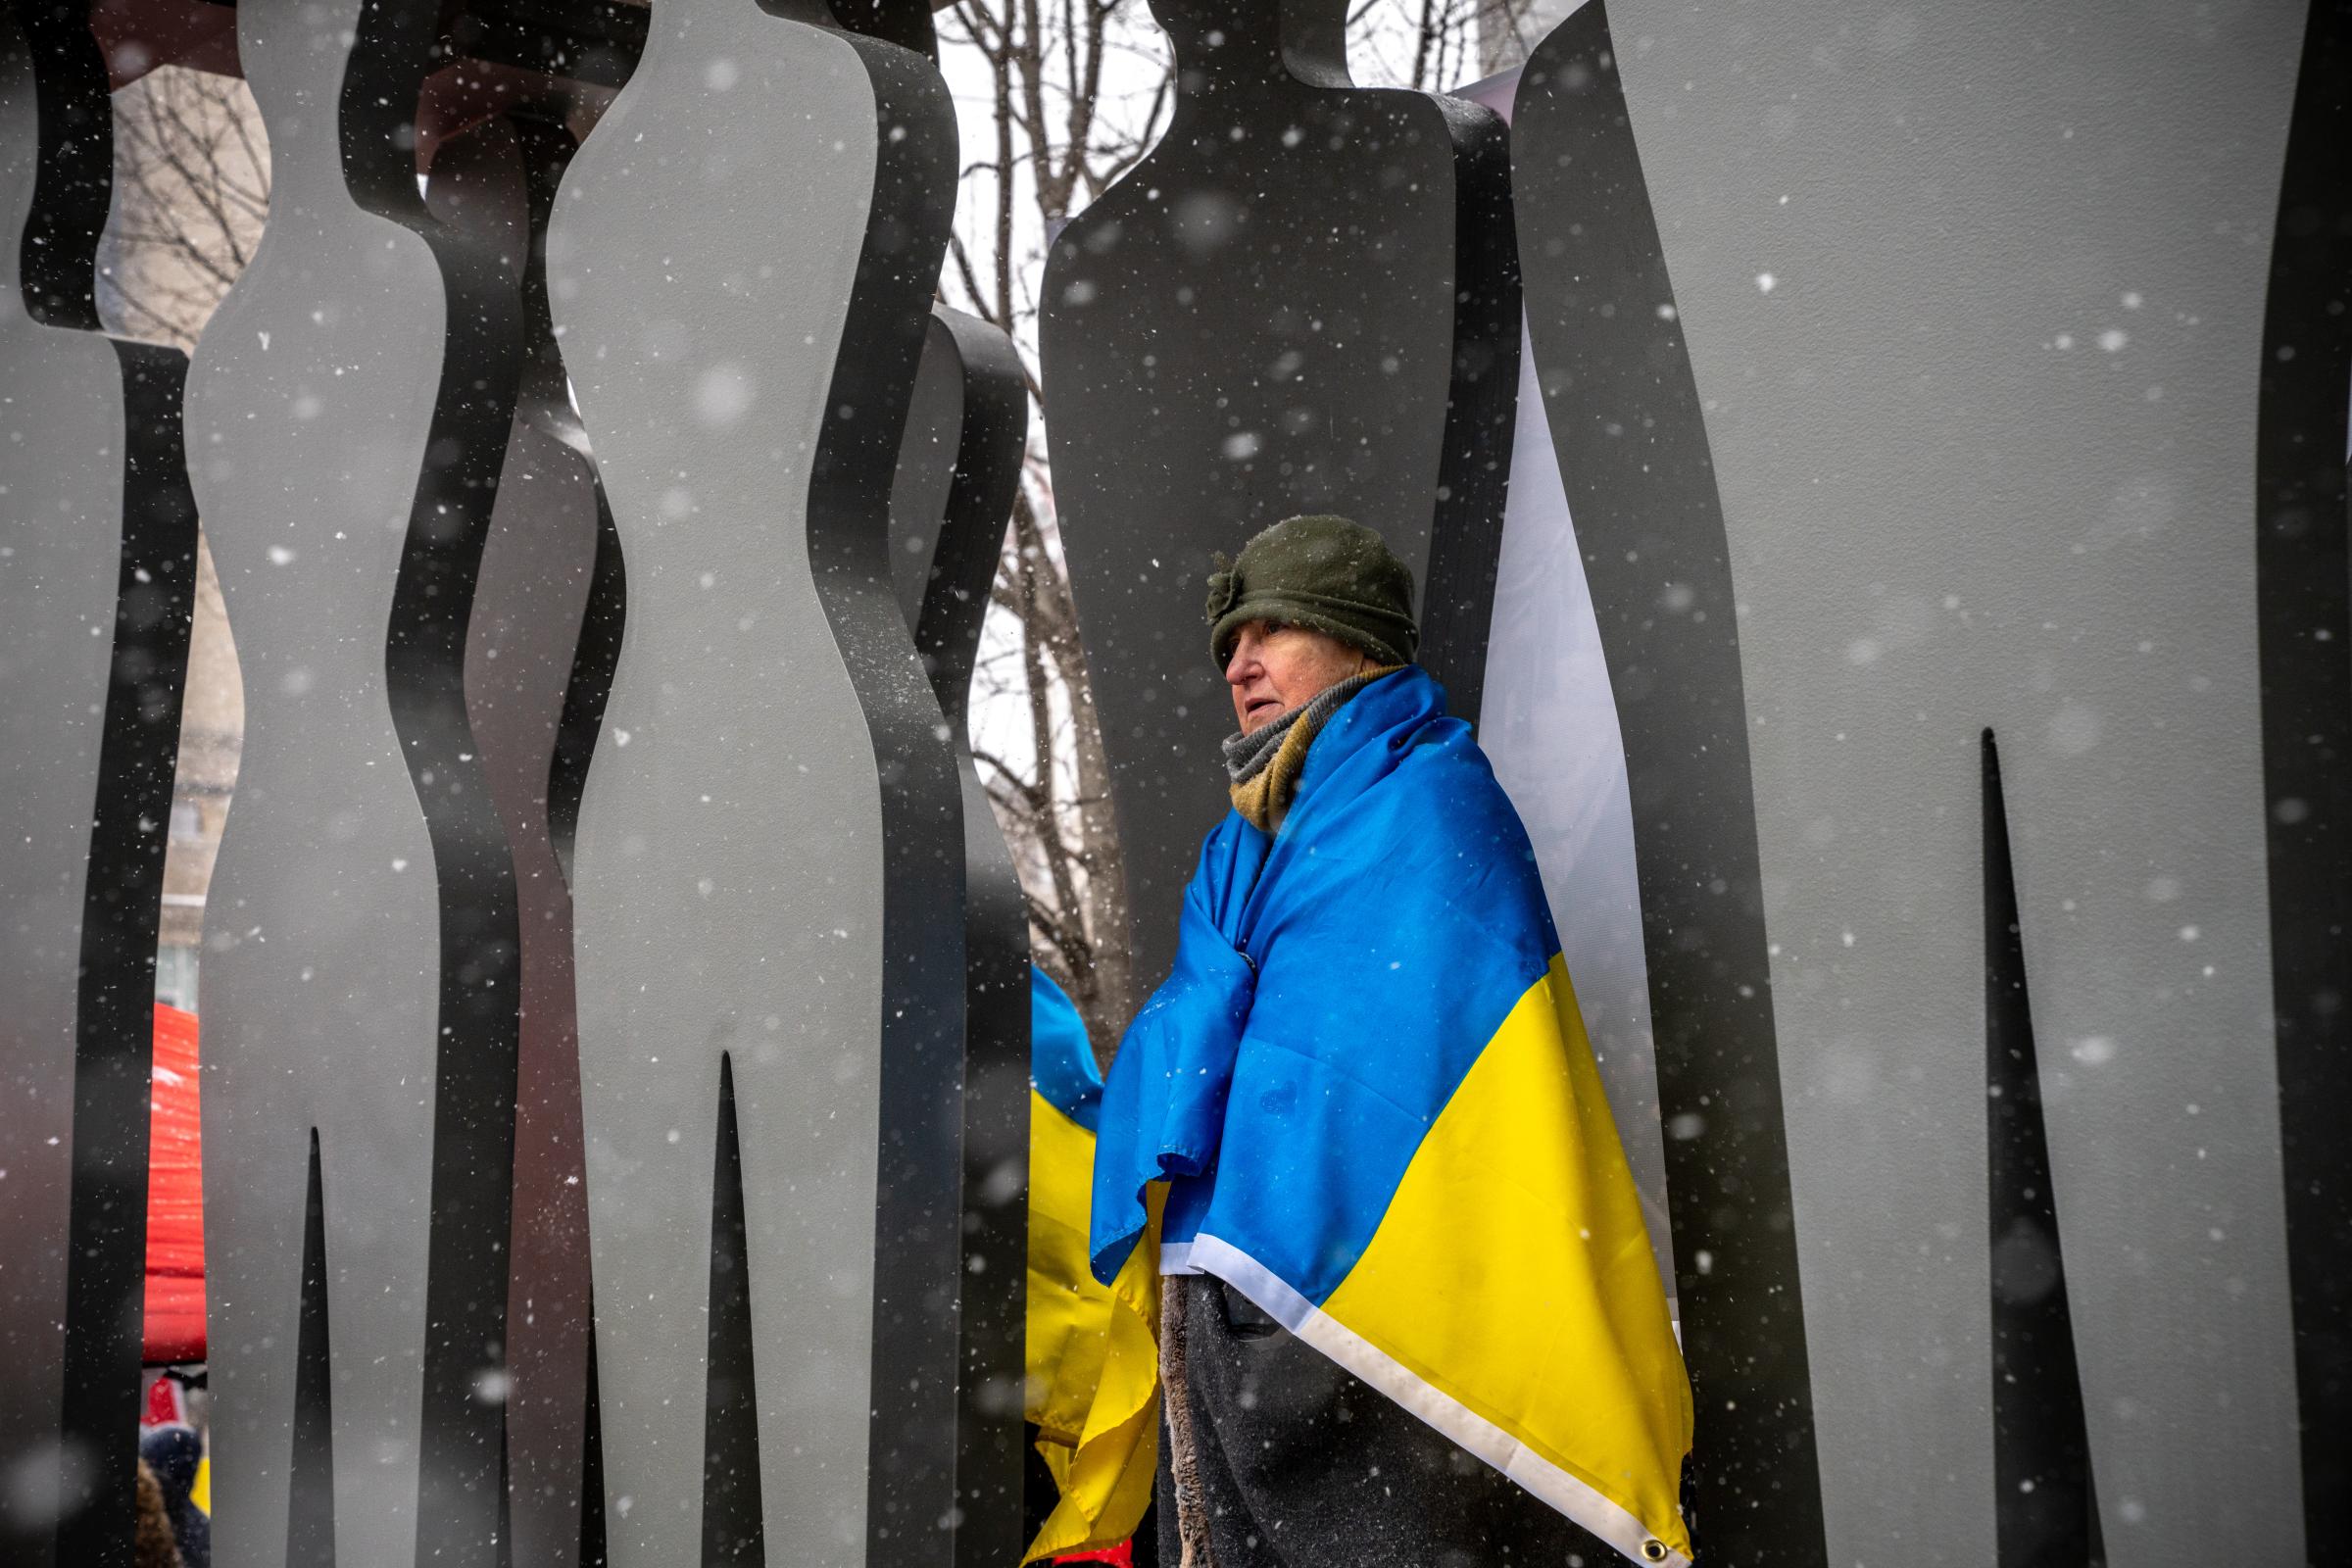 [Ongoing] Ukrainian Toronto Protests